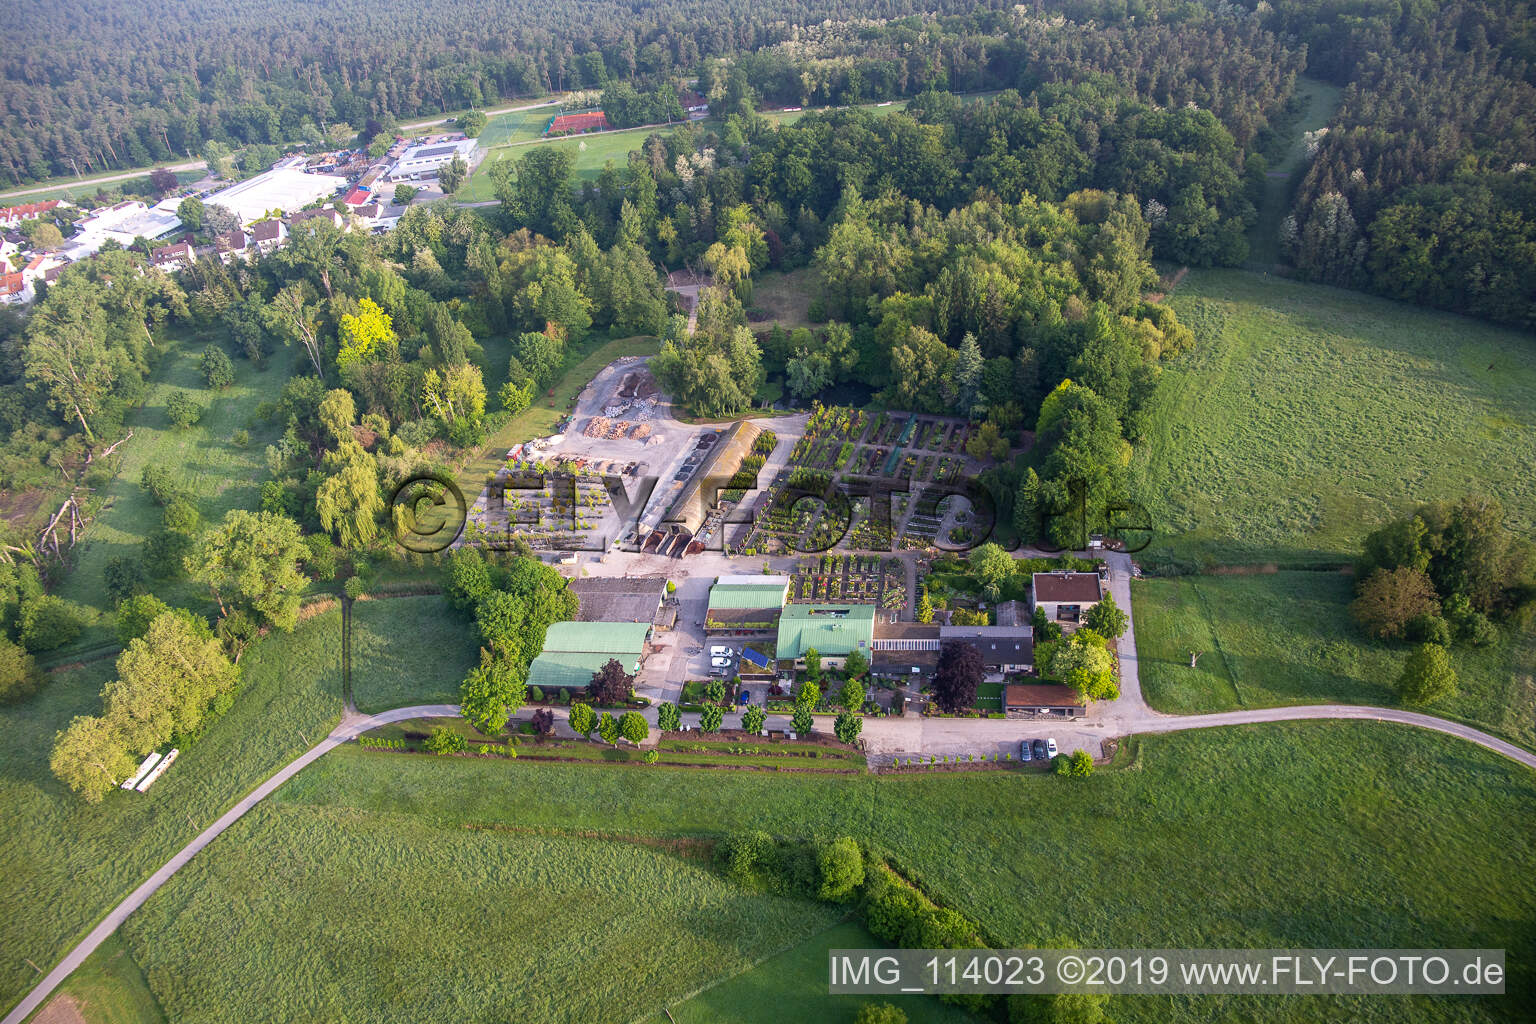 Bienwald Baumschule / Greentec in Berg im Bundesland Rheinland-Pfalz, Deutschland aus der Luft betrachtet